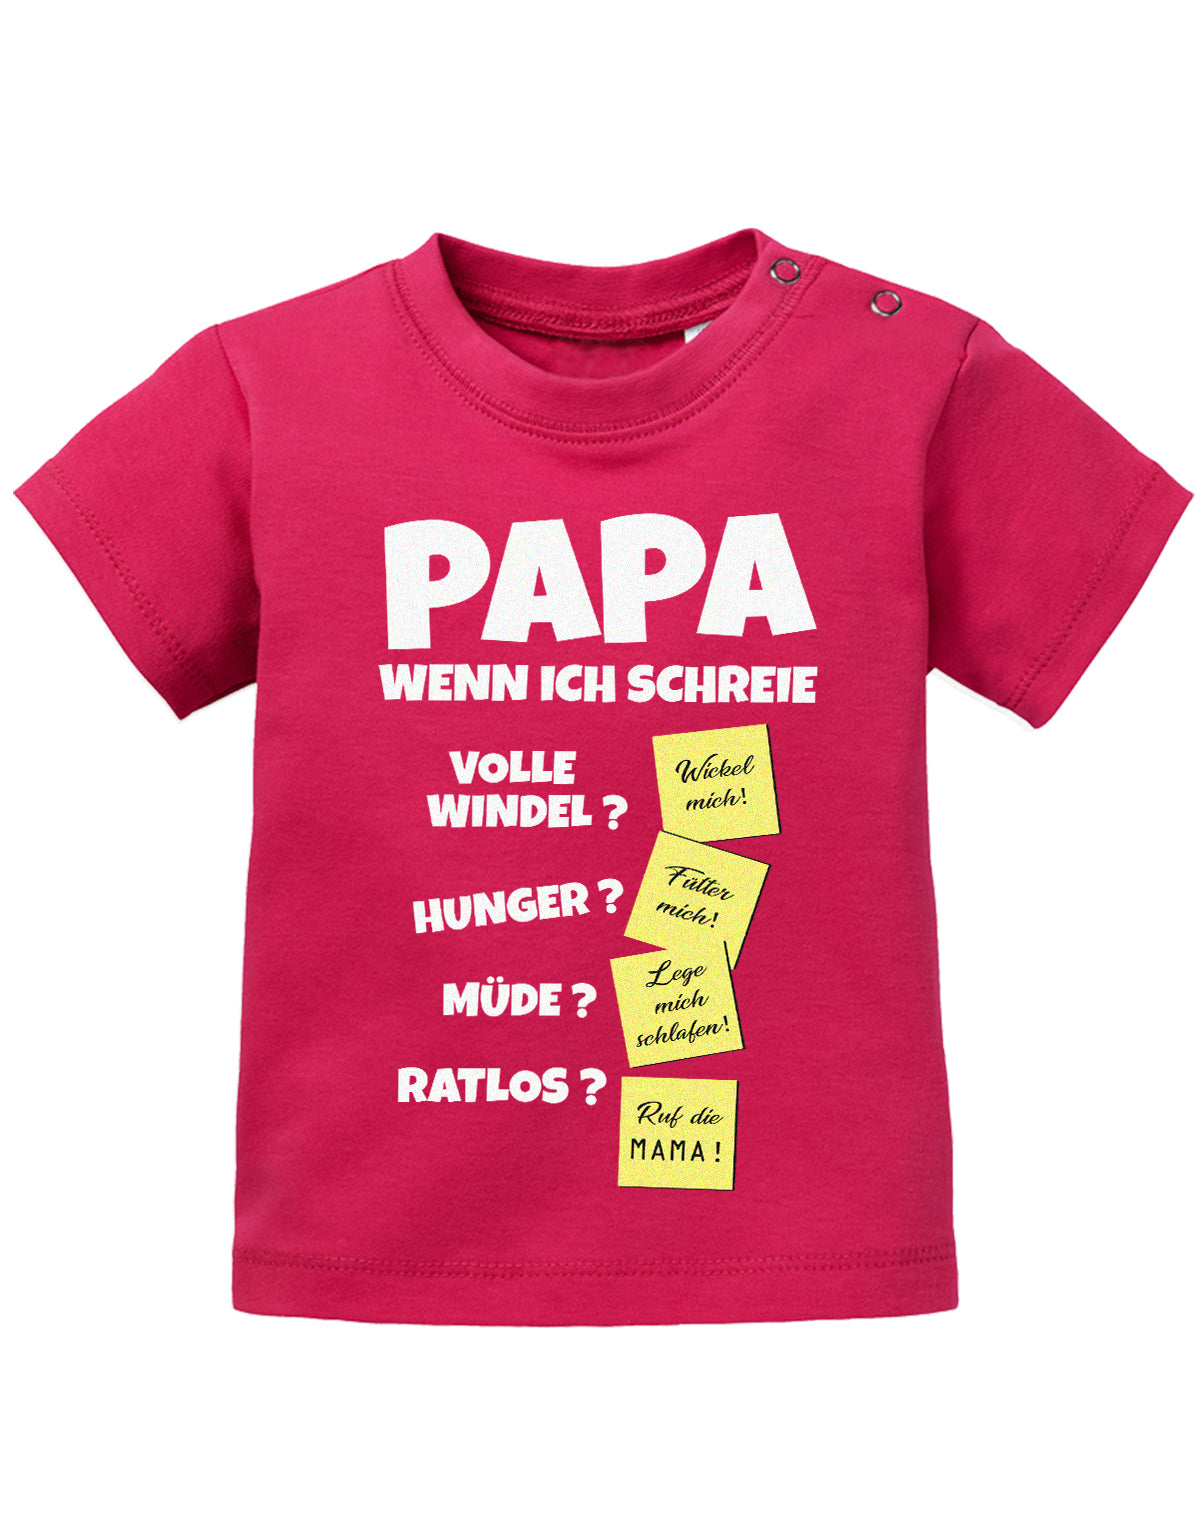 Lustiges süßes Sprüche Baby Shirt Papa wenn ich schreie - Notizen Lösungen. Sorbet